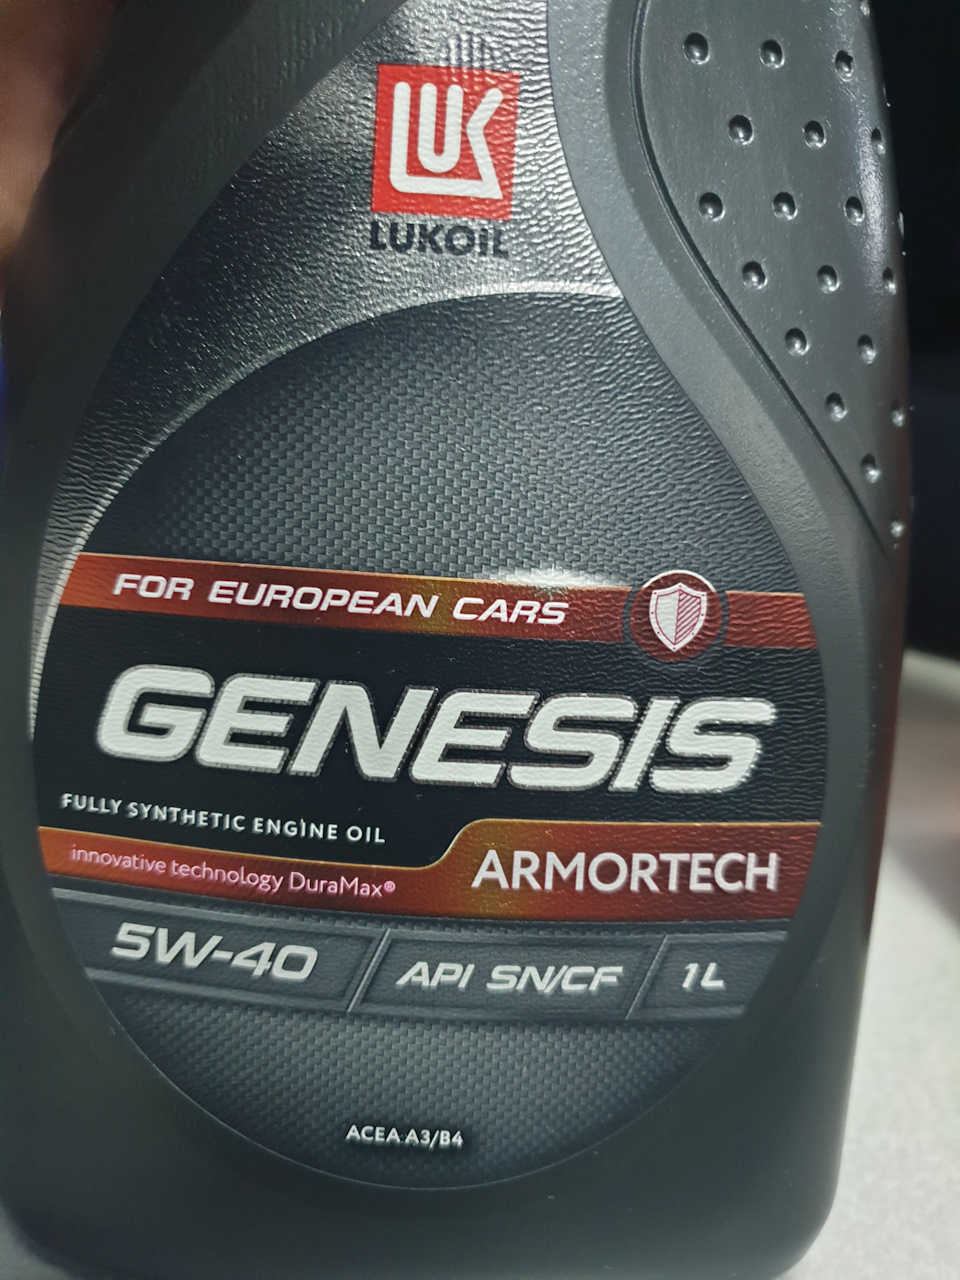 Armortech 5w40 отзывы. Genesis Armortech 5w-40. Lukoil Genesis 5w40 European. Лукойл Genesis Armortech 5w-40. Lukoil Genesis 5w40.